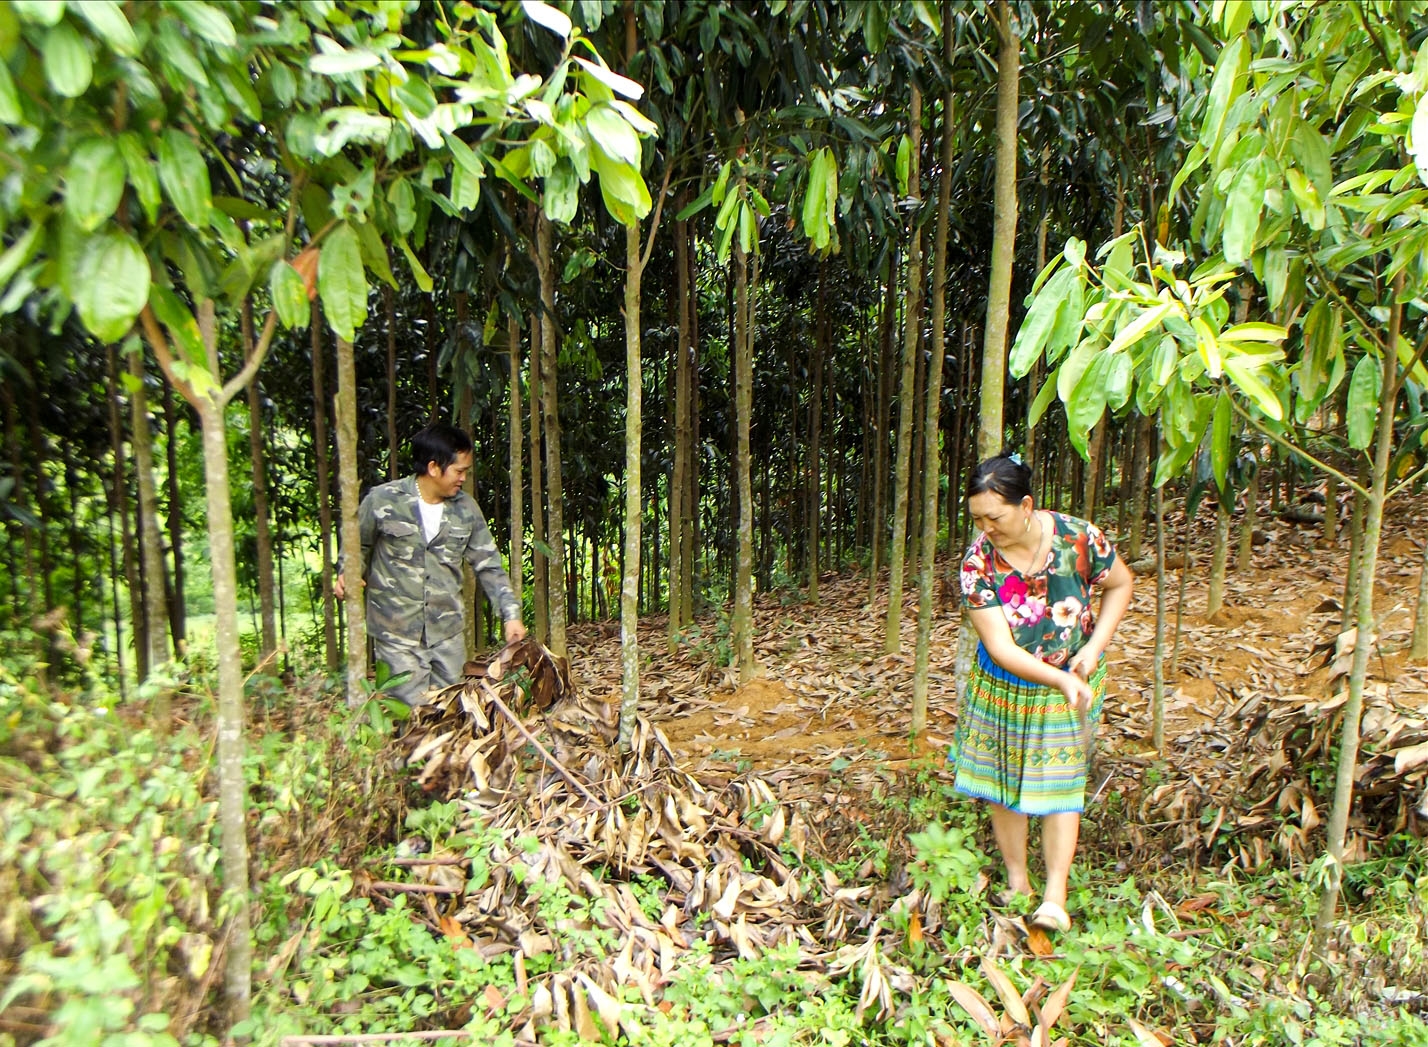 Vợ chồng anh Hòa chăm sóc cây quế theo đúng hướng dẫn kỹ thuật của khuyến nông nên đồi quế phát triển tốt, hứa hẹn thu bạc tỷ